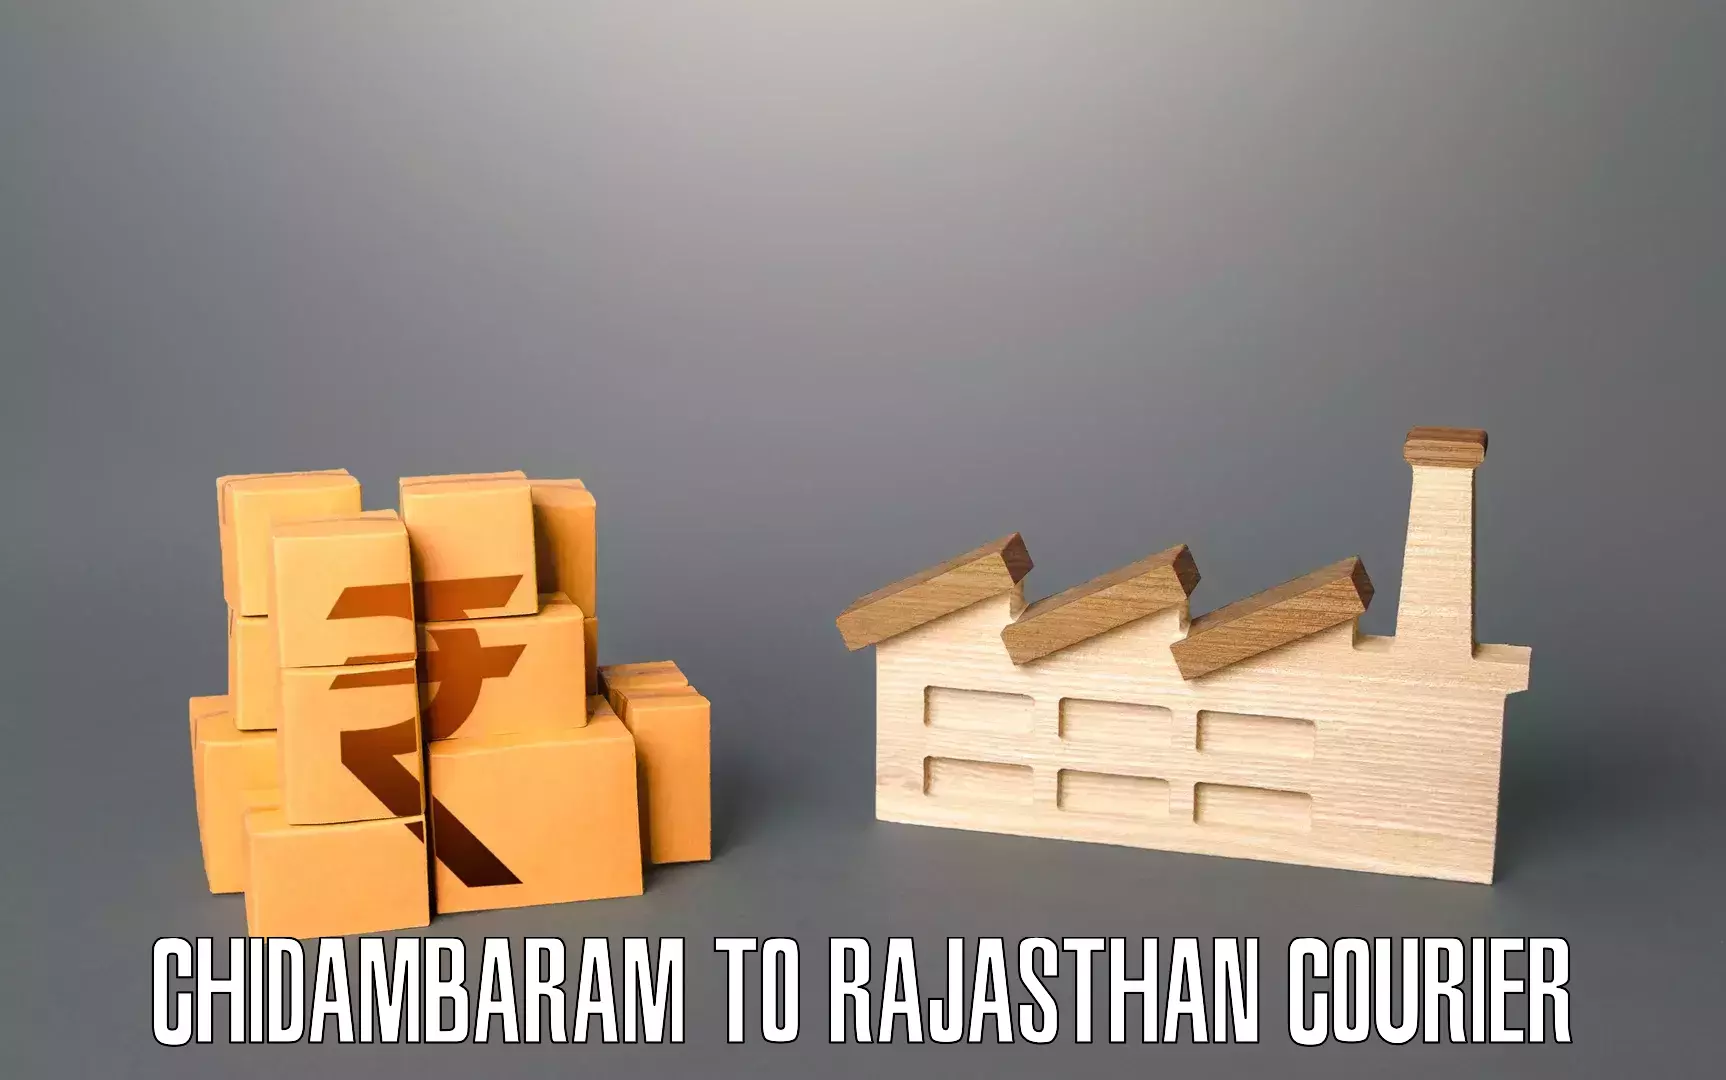 Cost-effective moving solutions Chidambaram to Kishangarh